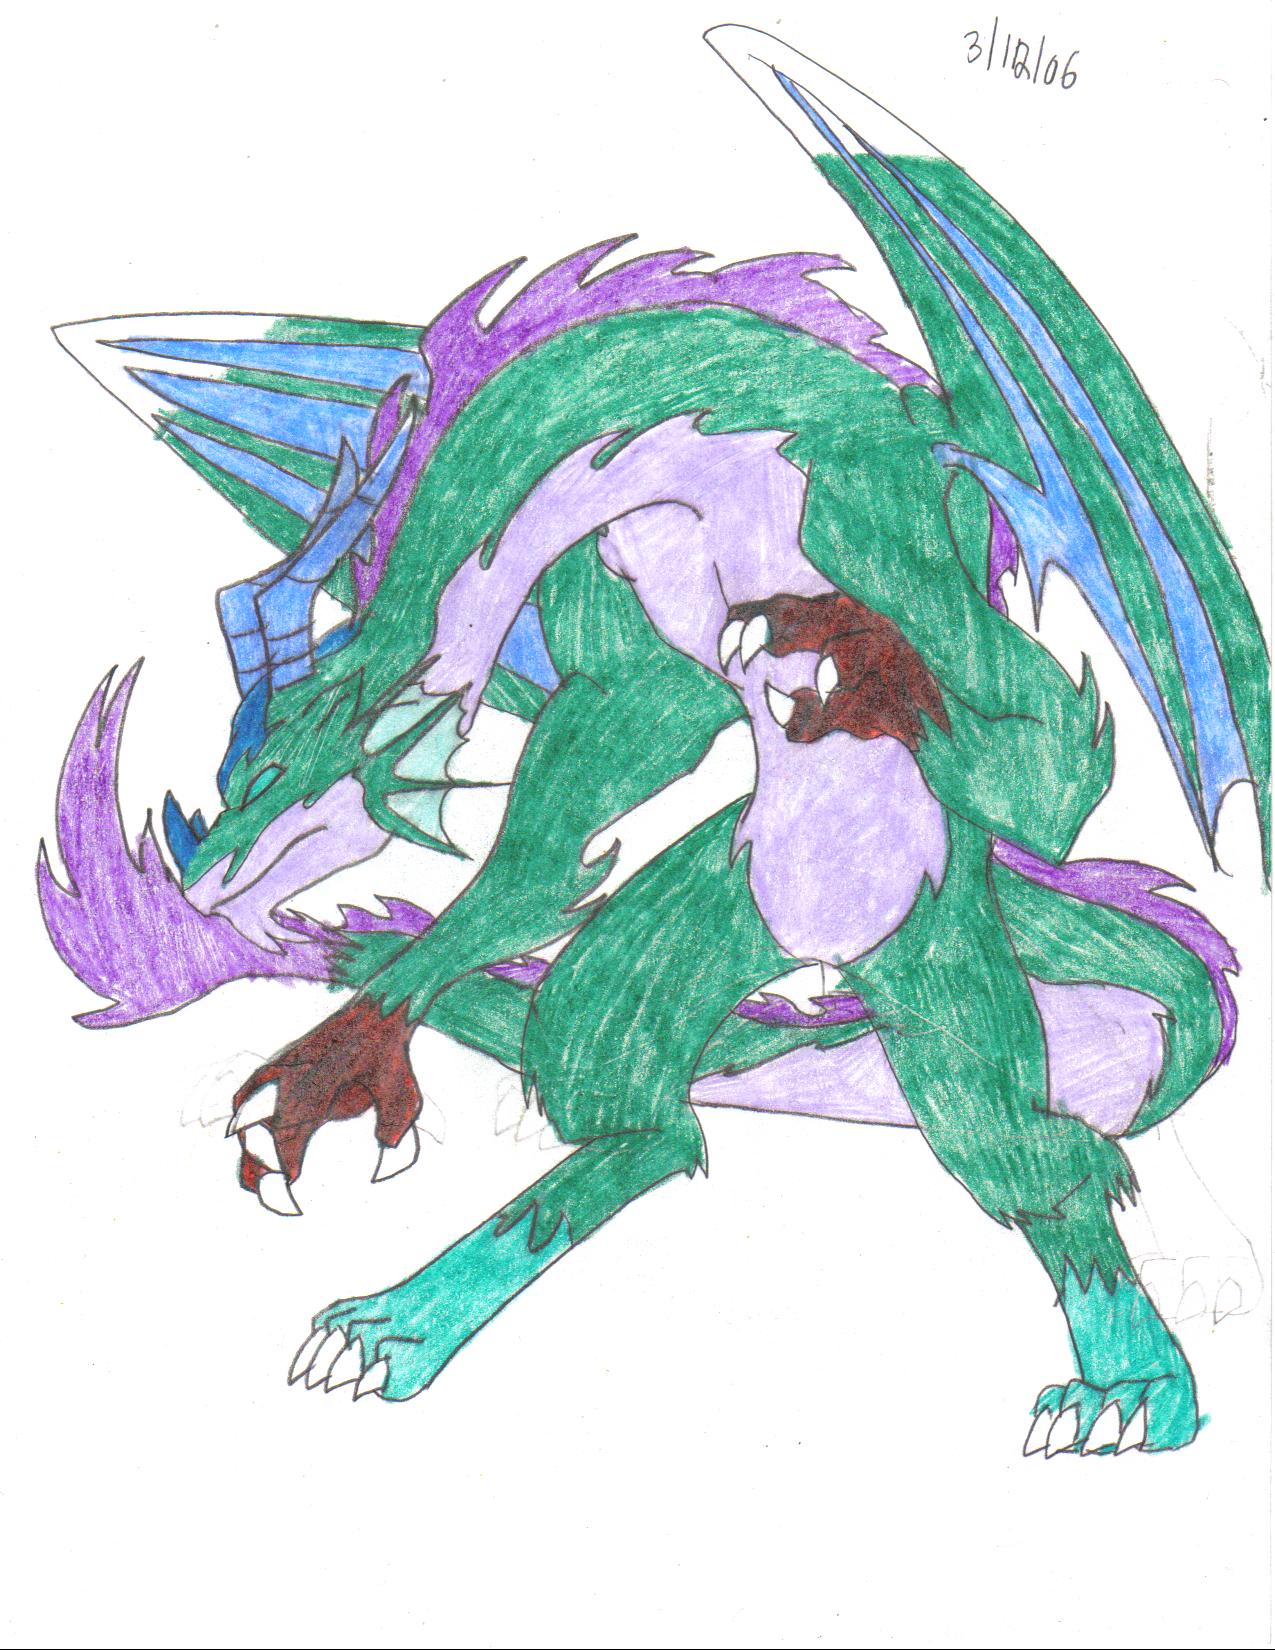 Contest Entry: Dragon by crocdragon89